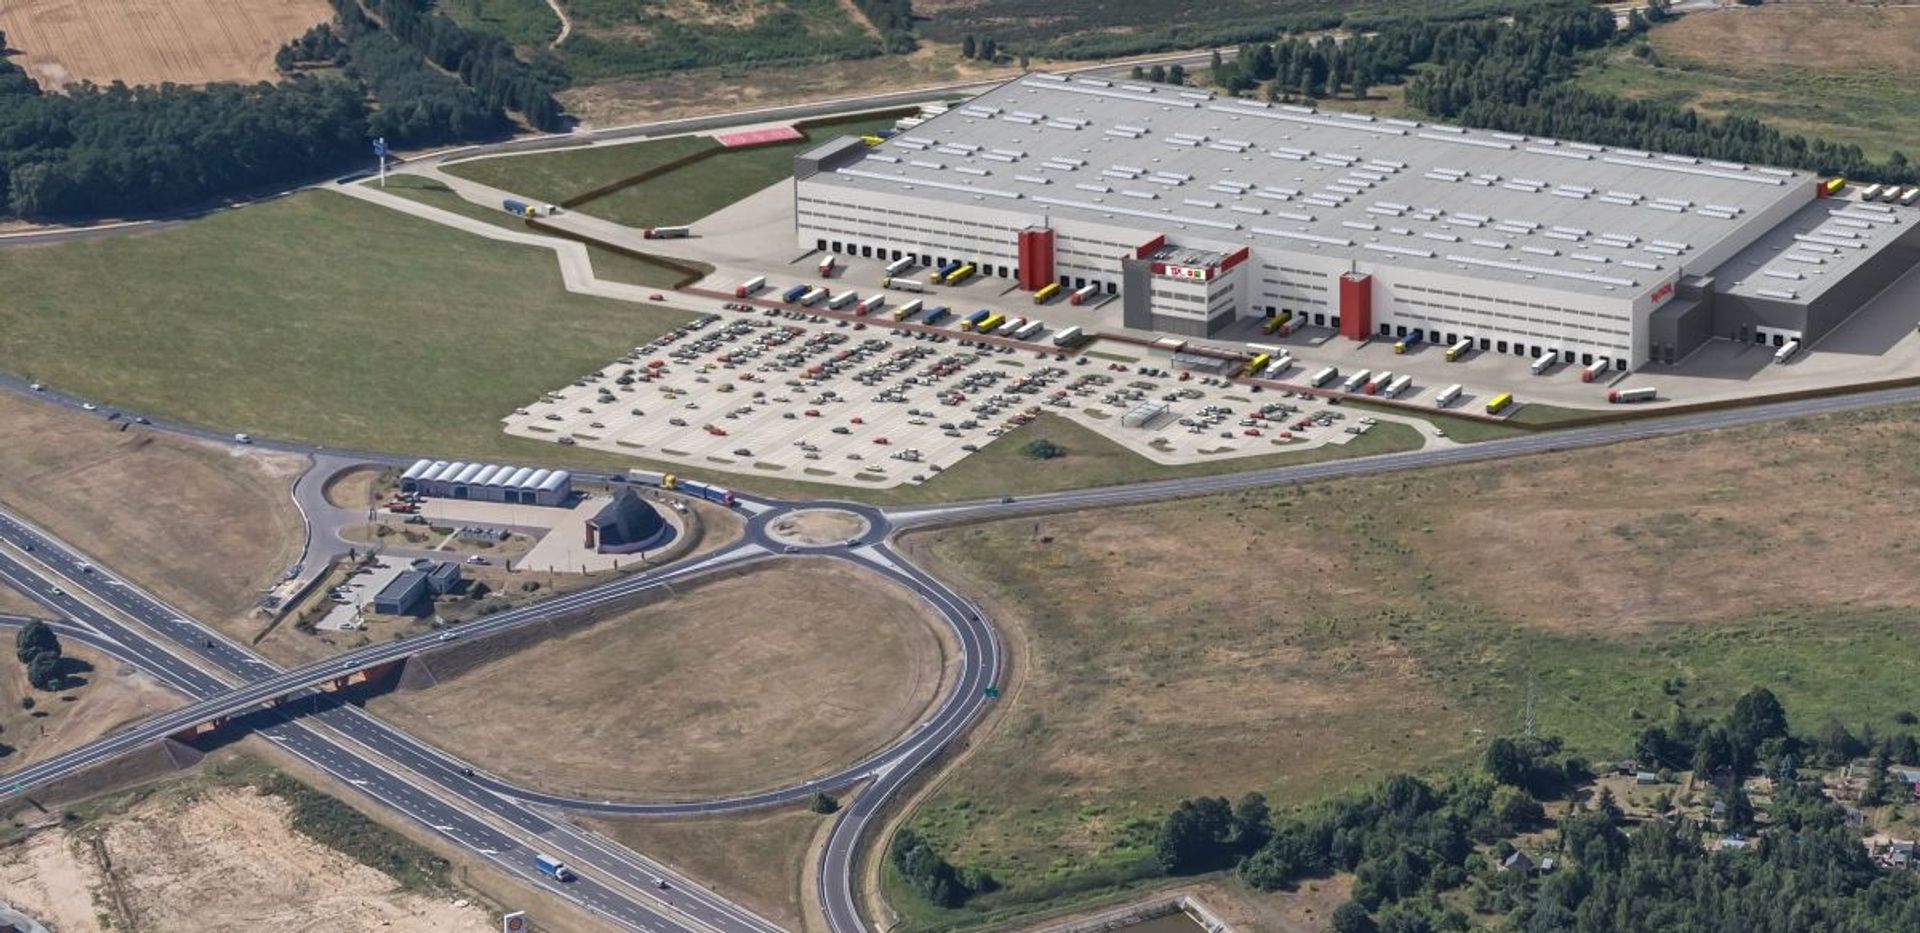 W Sulechowie powstało największe w Europie centrum dystrybucyjne sieci sklepów TK Maxx. Pracę w nim znajdzie 1000 osób!